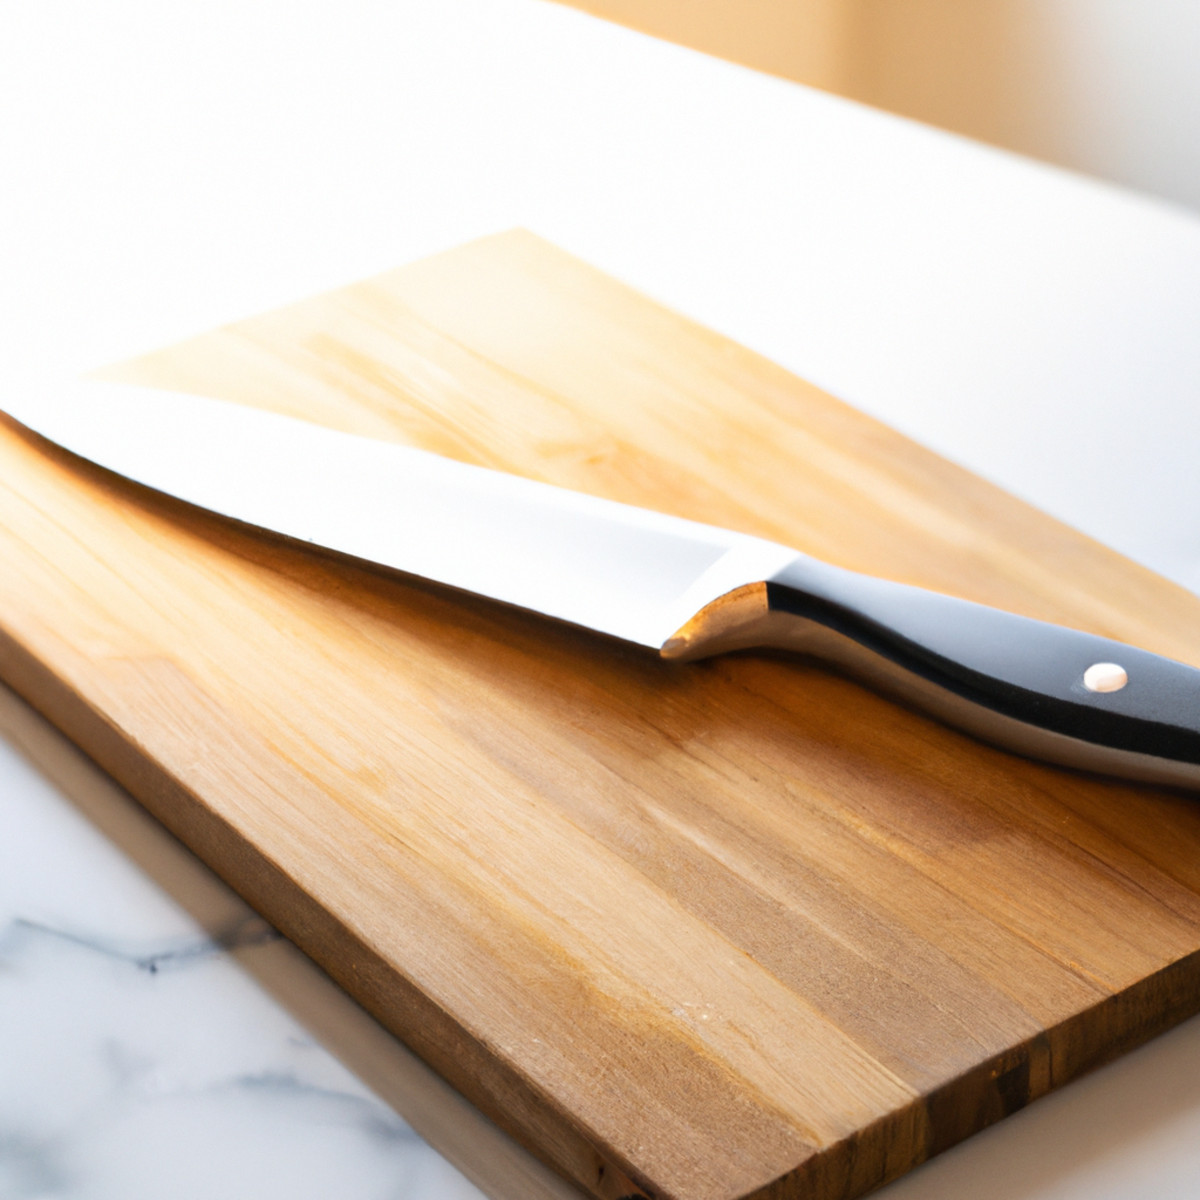 Cuchillo Doble Bisel- ¿Qué es y Cuáles son sus Usos?